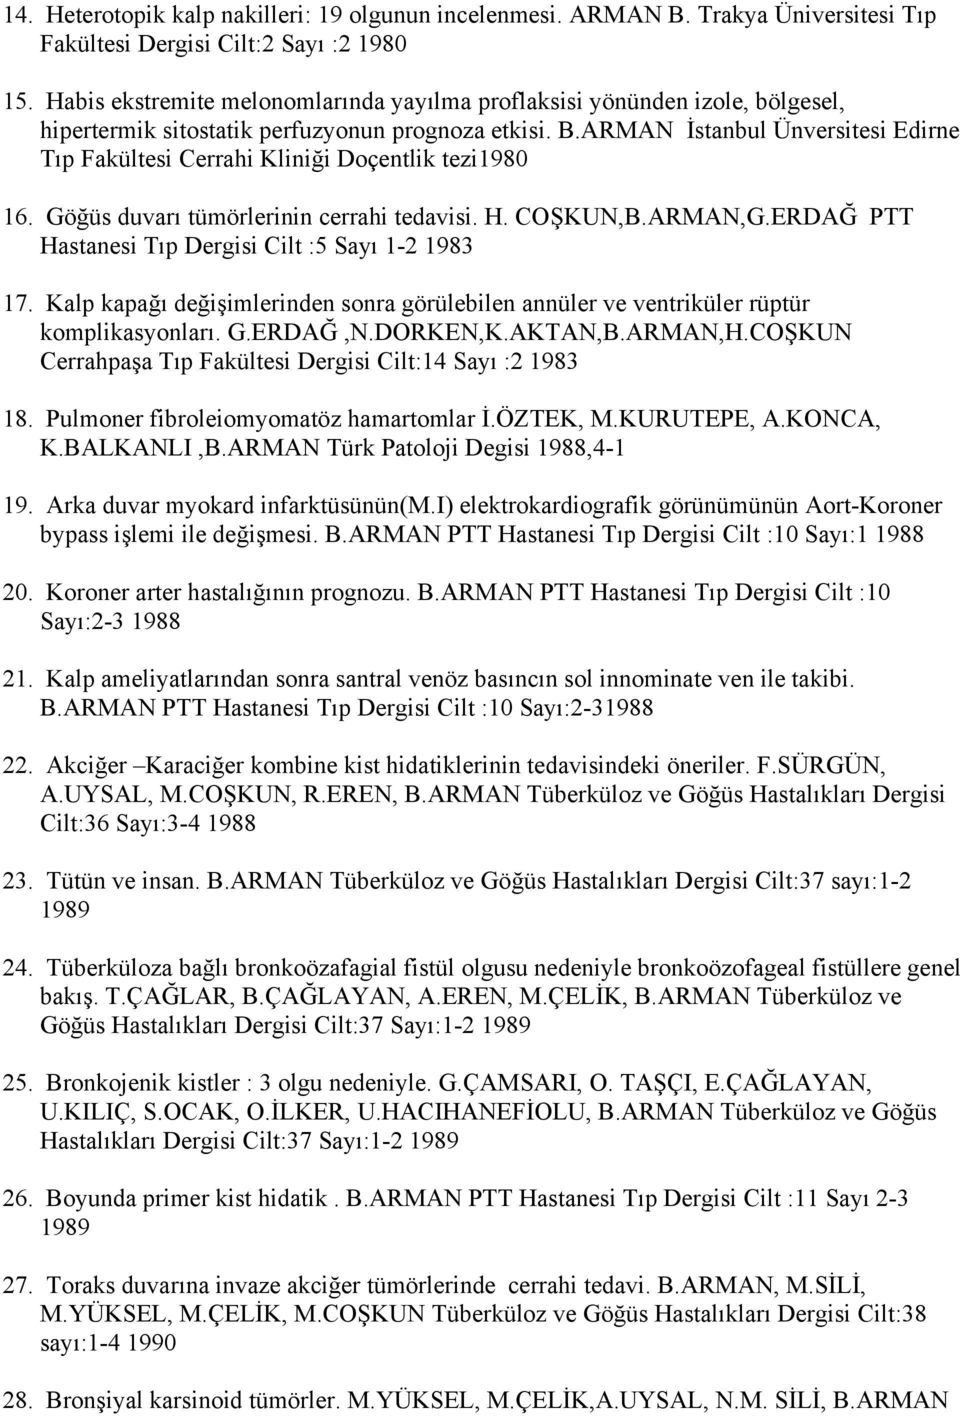 ARMAN İstanbul Ünversitesi Edirne Tıp Fakültesi Cerrahi Kliniği Doçentlik tezi1980 16. Göğüs duvarı tümörlerinin cerrahi tedavisi. H. COŞKUN,B.ARMAN,G.